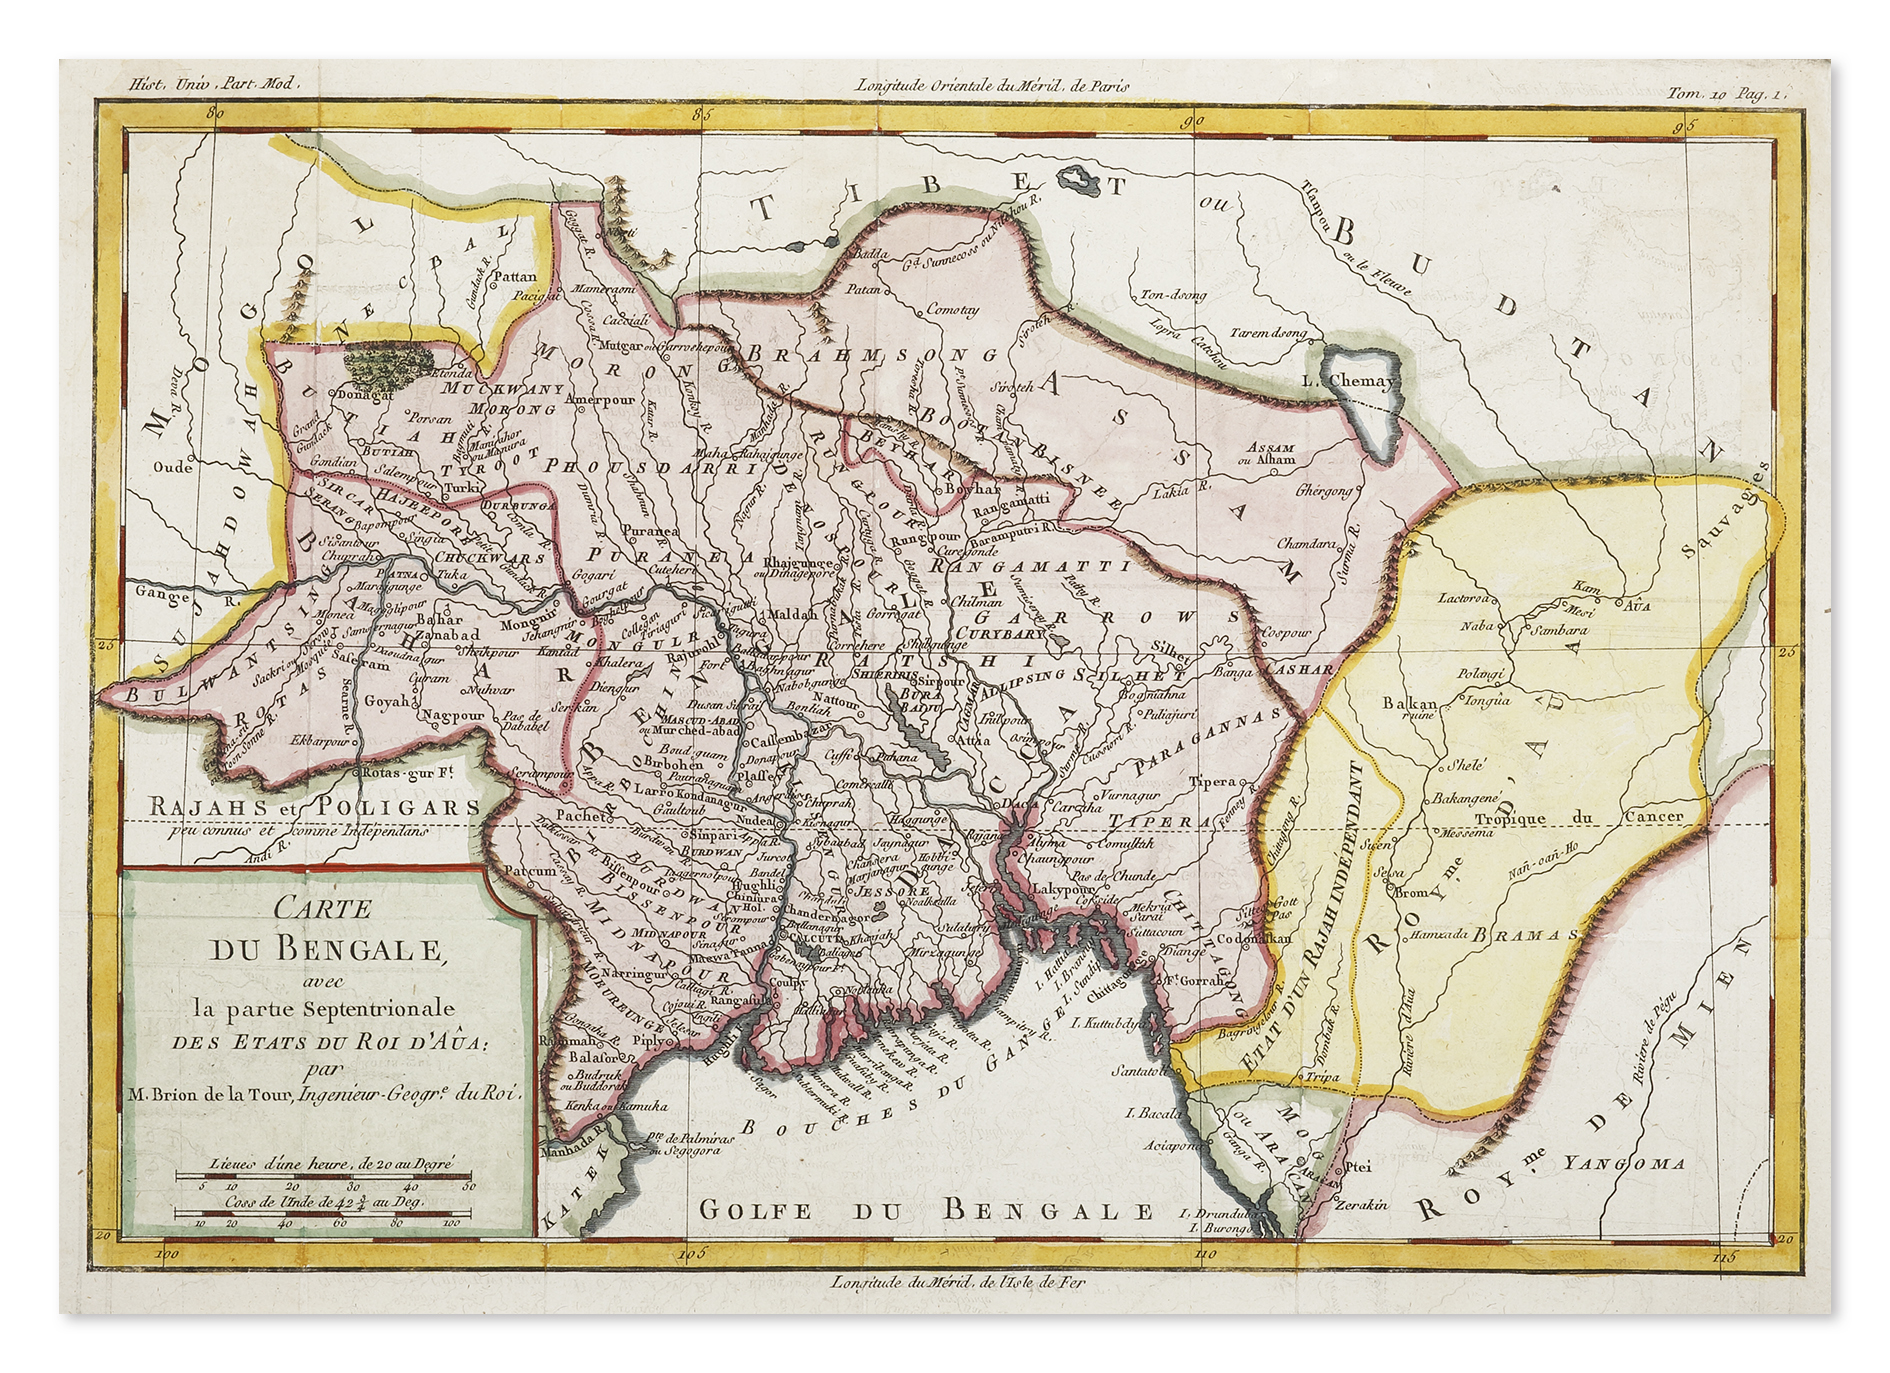 Carte du Bengale avec la partie Septentrionale des etats de Roi D'Aua - Antique Print from 1774